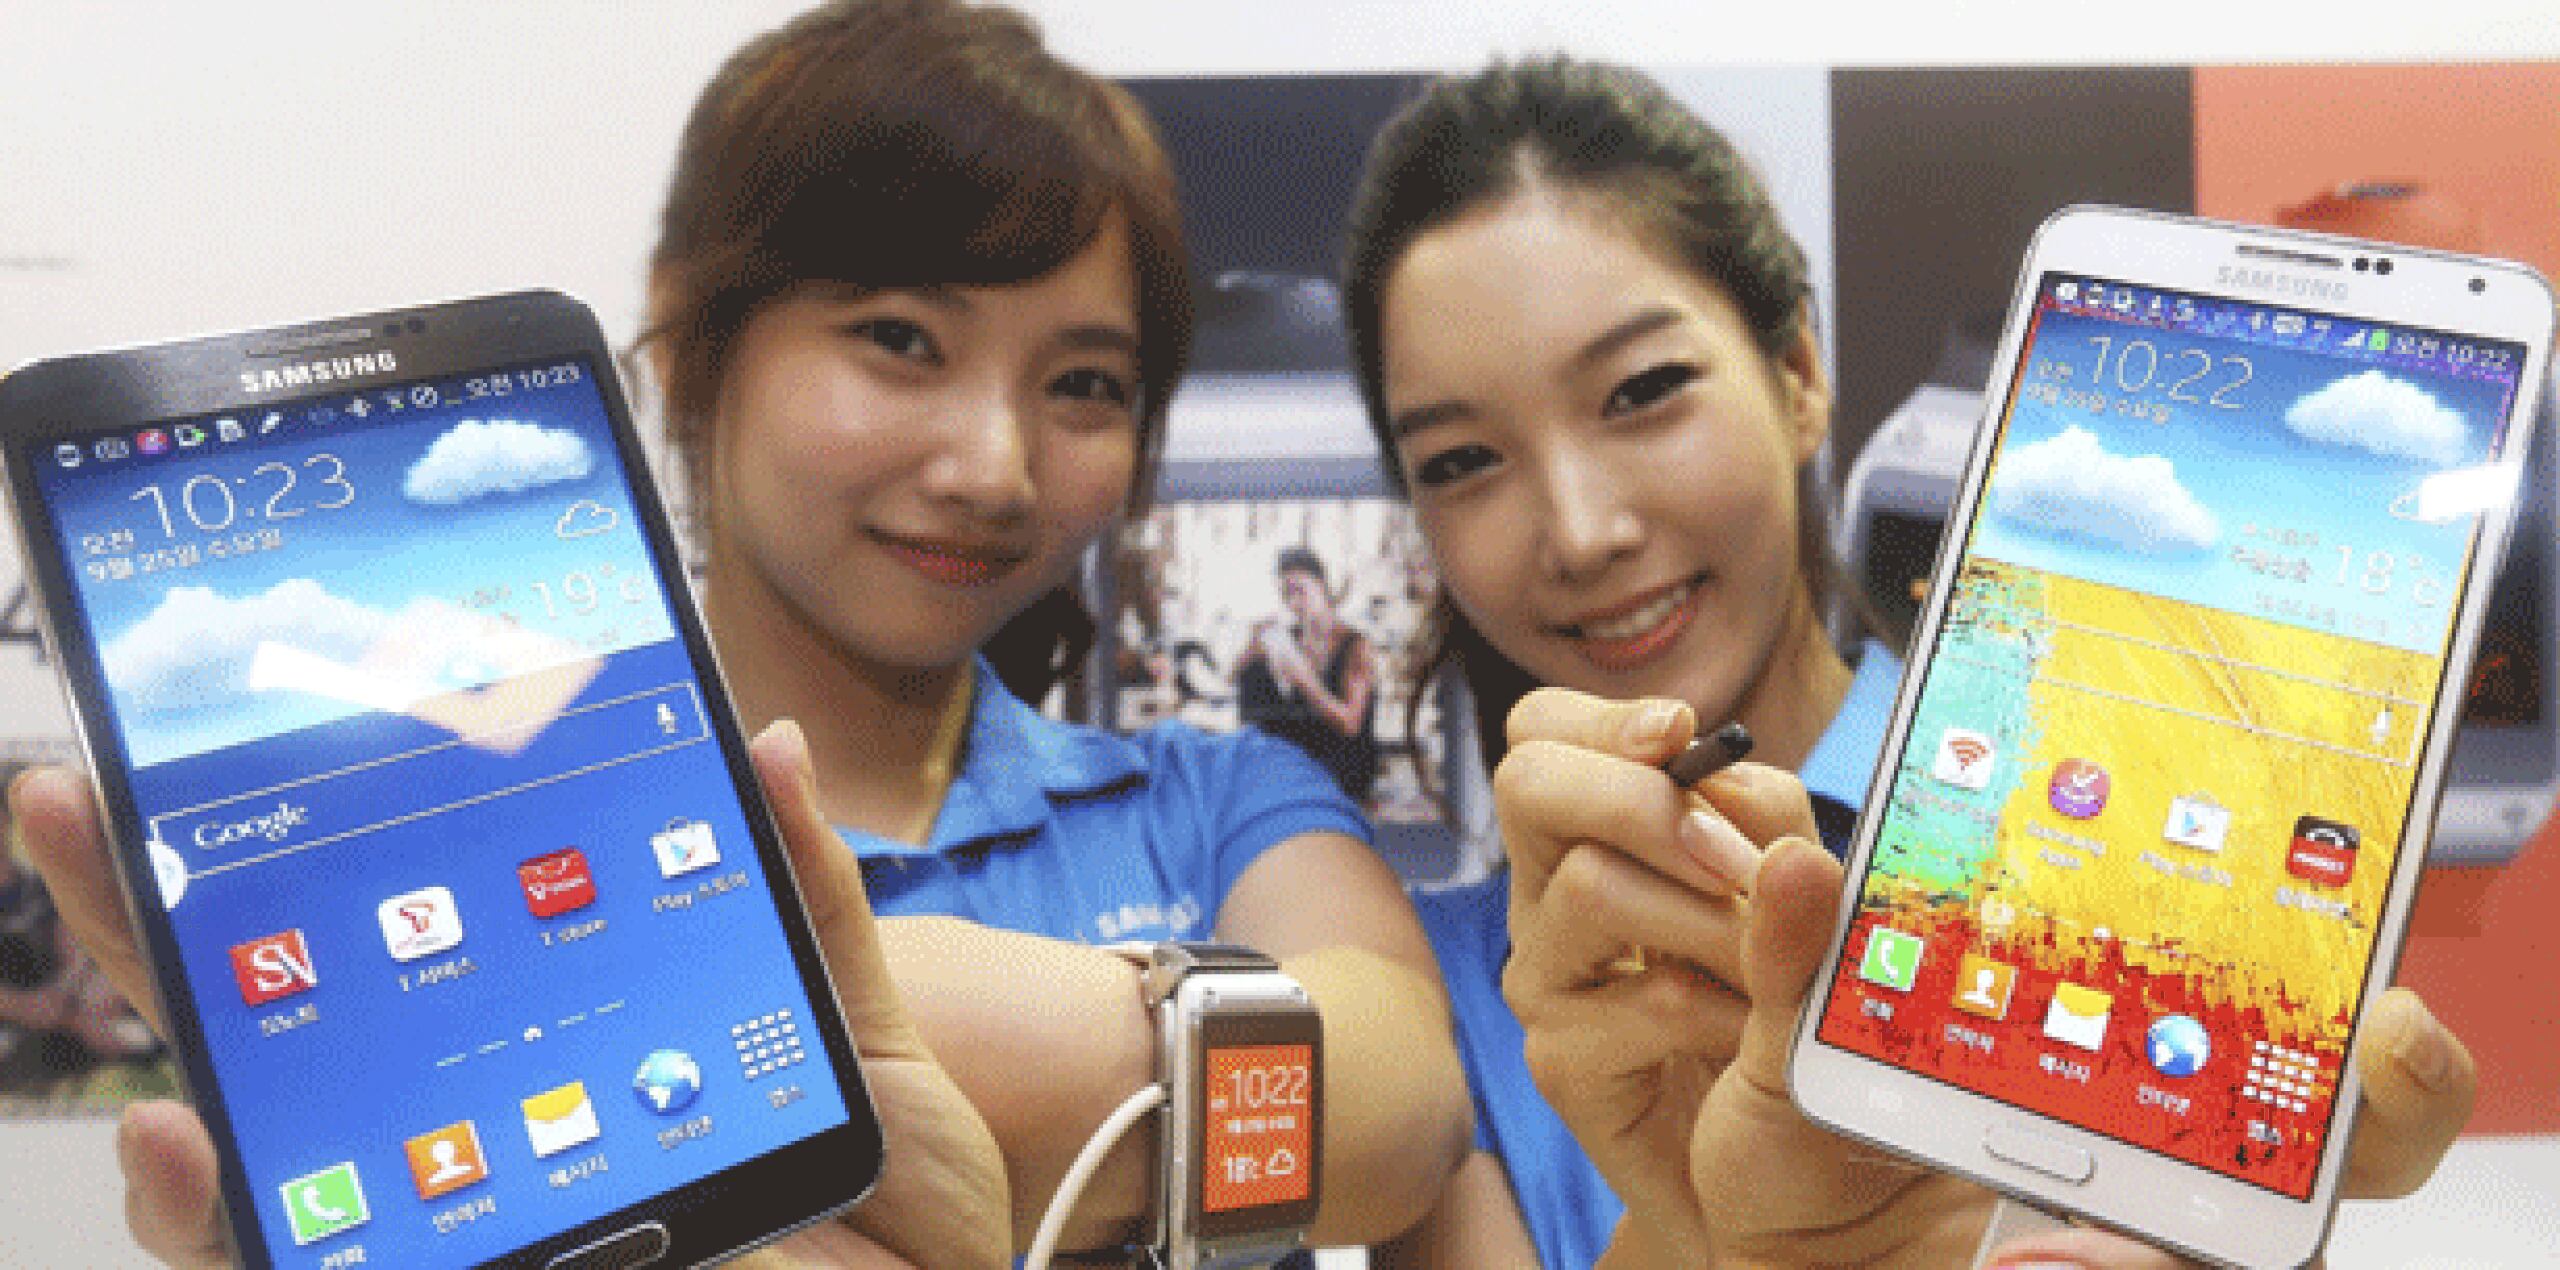 El nuevo anuncio fue durante la ceremonia conjunta de lanzamiento de la "phablet" Galaxy Note 3 y el reloj inteligente Galaxy Gear. (EFE/Yonhap)